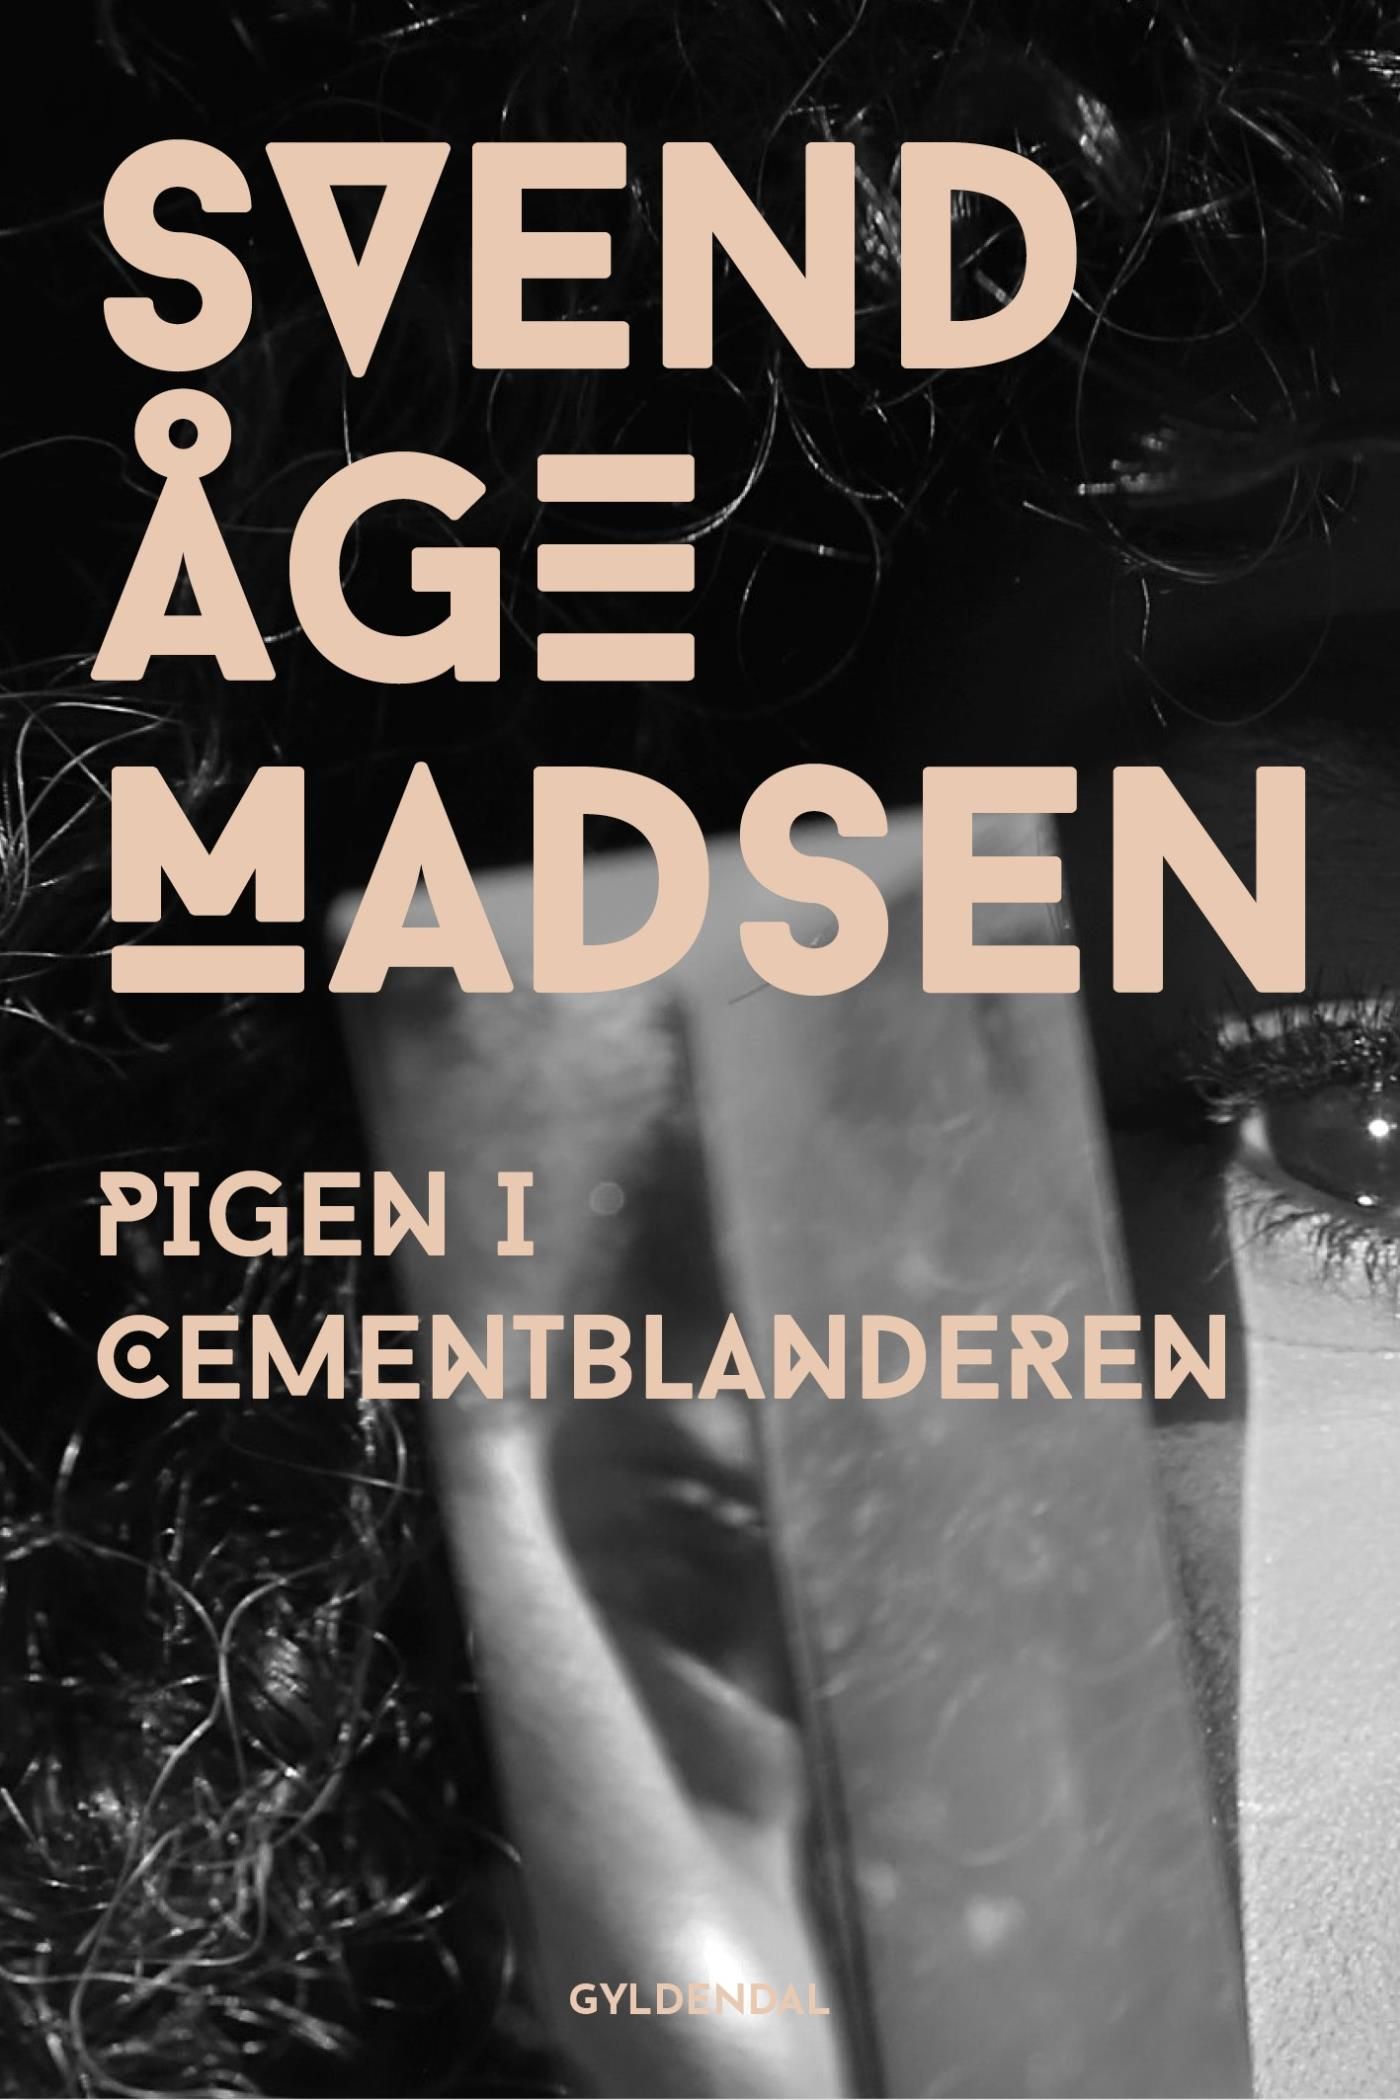 Pigen i cementblanderen, eBook by Svend Åge Madsen